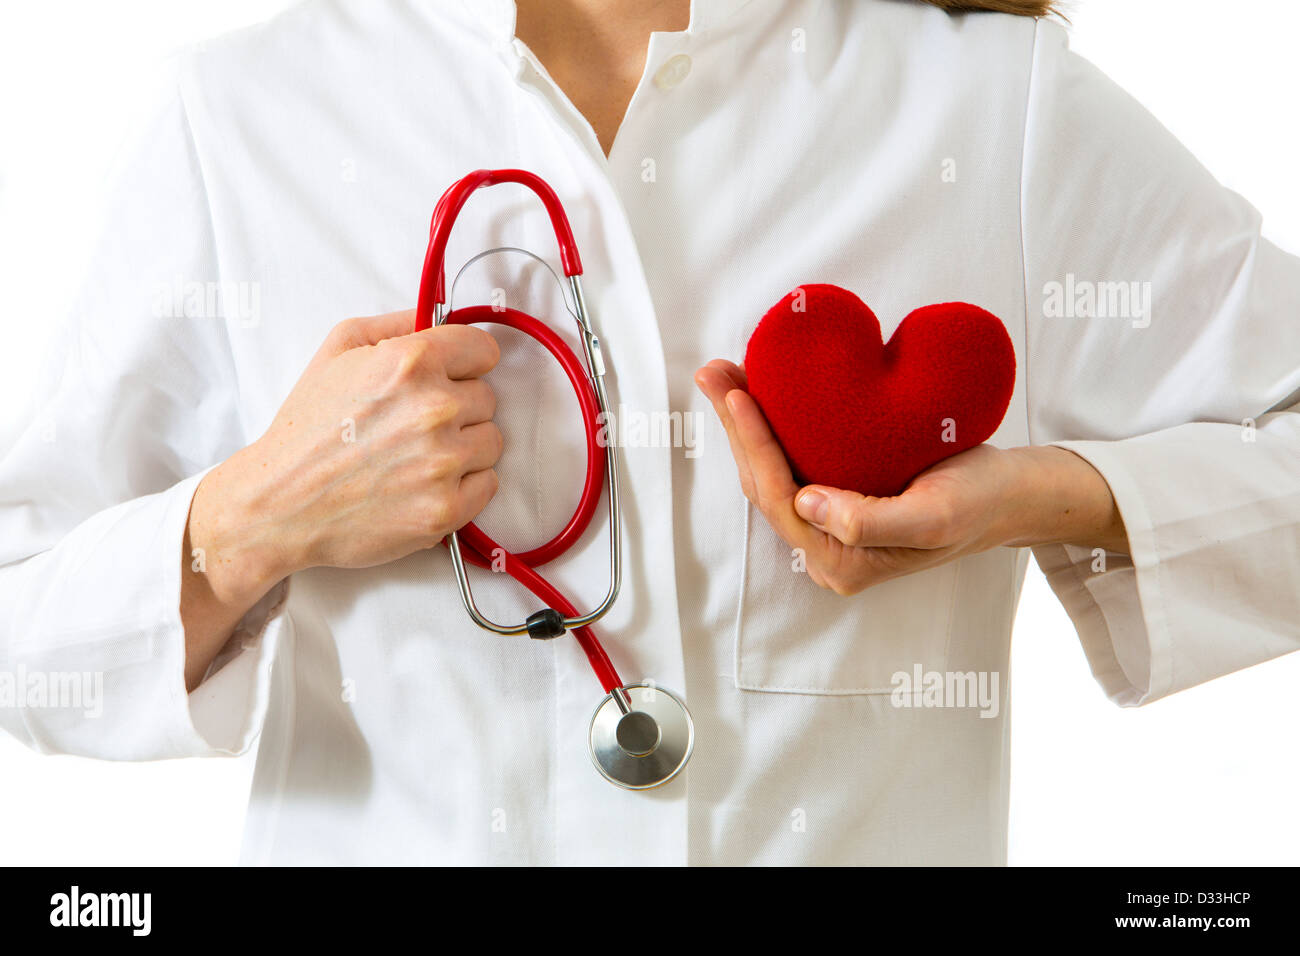 Immagine di simbolo, attacco cardiaco, medico. Medico tenendo un cuore rosso nelle sue mani. Foto Stock